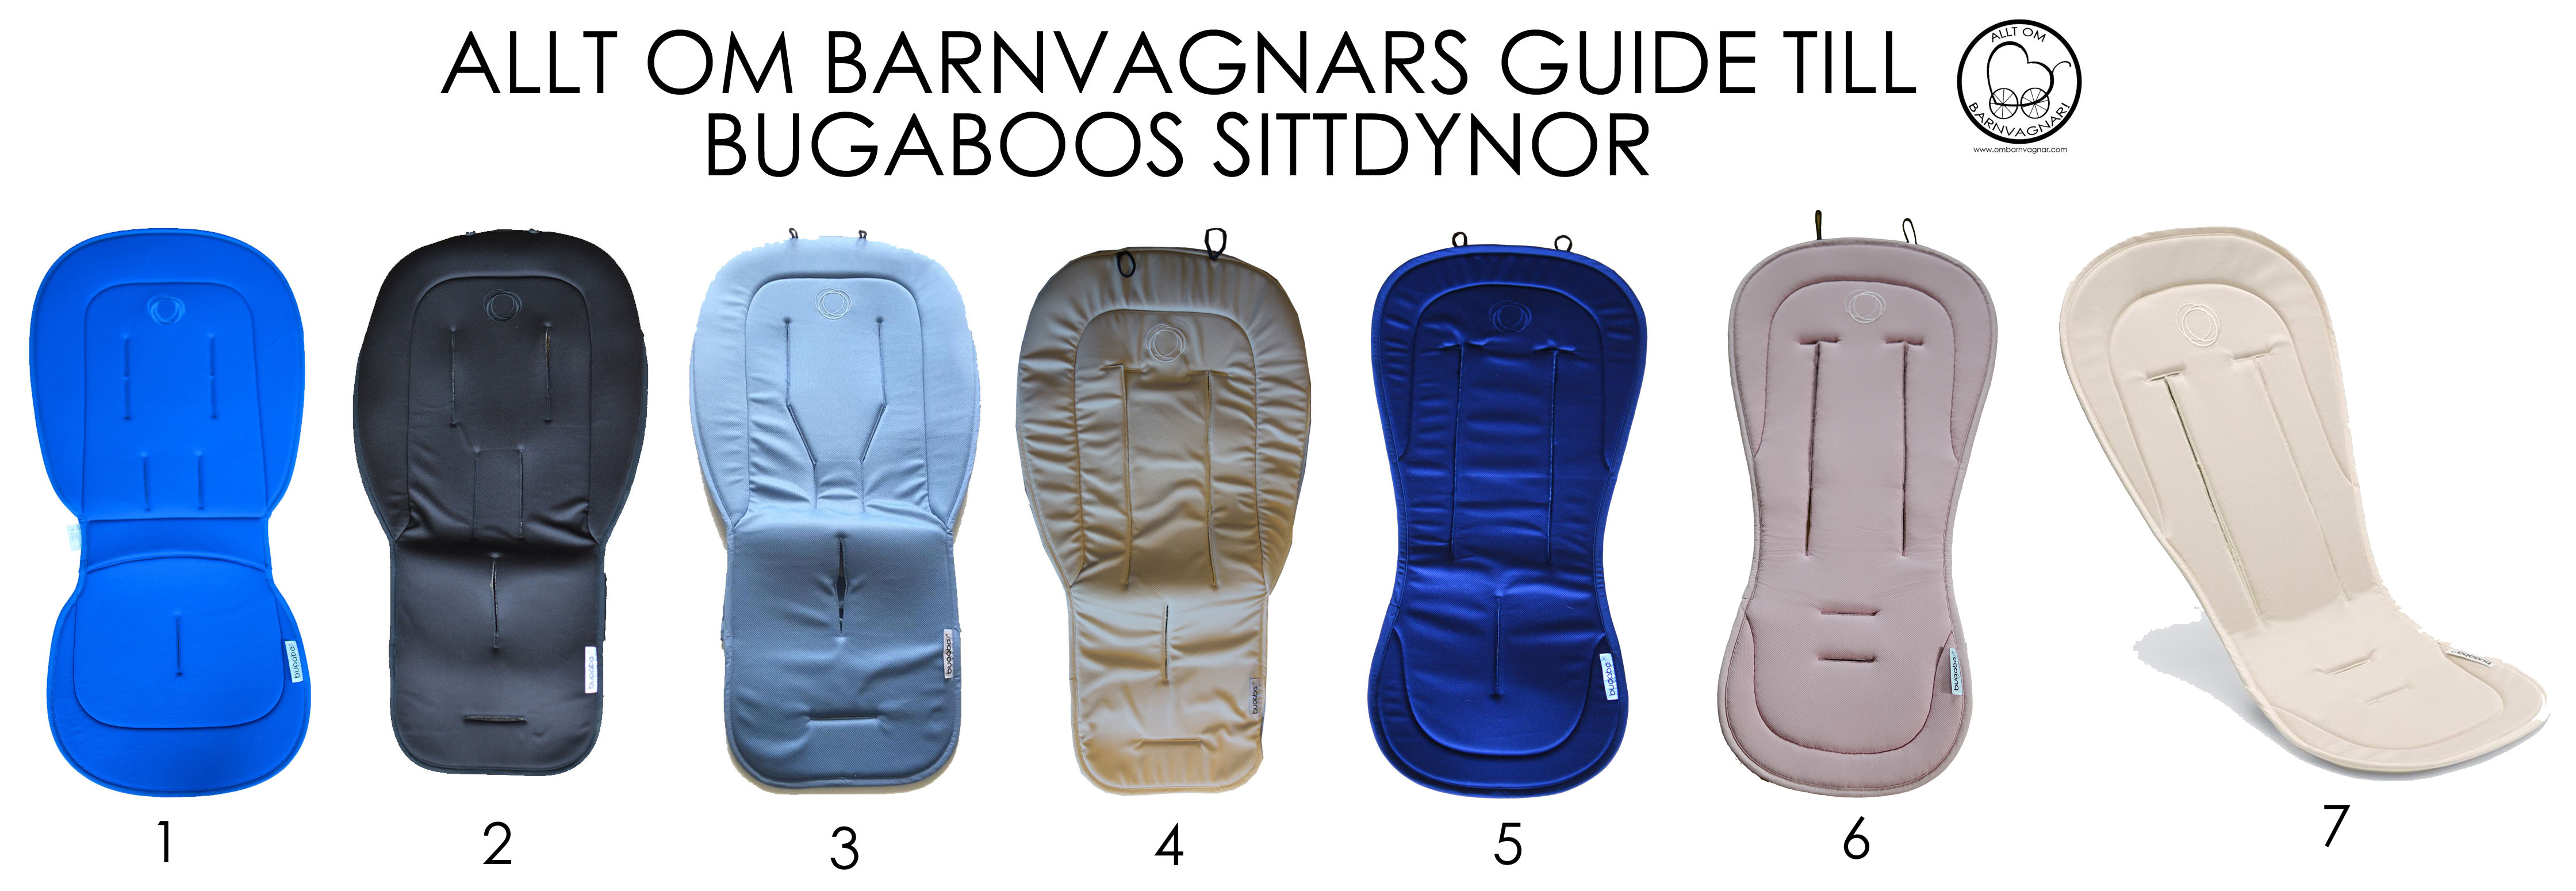 Guide över Bugaboos sittdynor